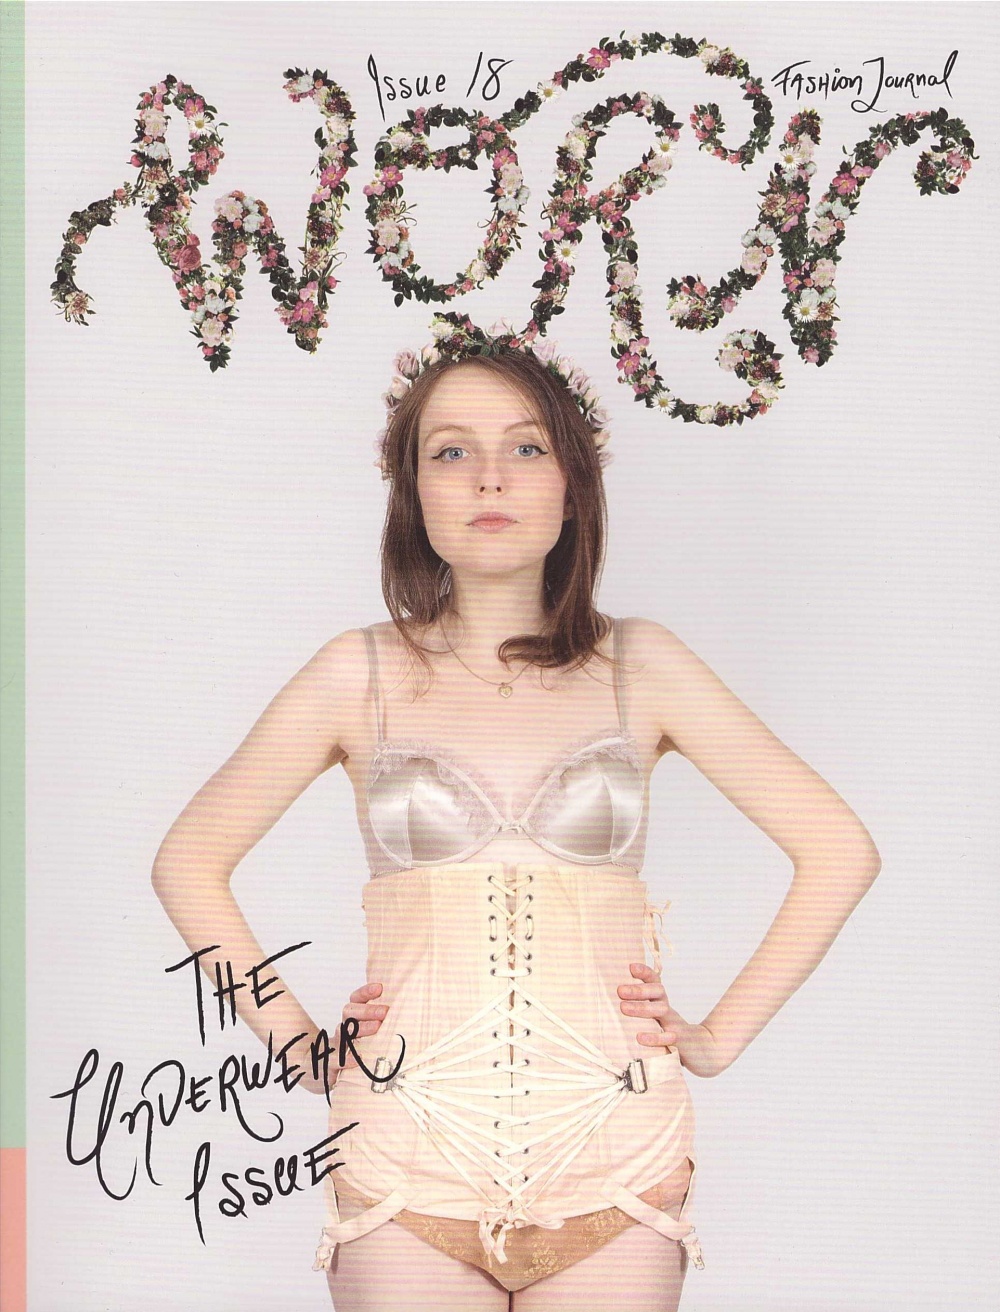 WORN Fashion Journal Issue 18: The Underwear Issue